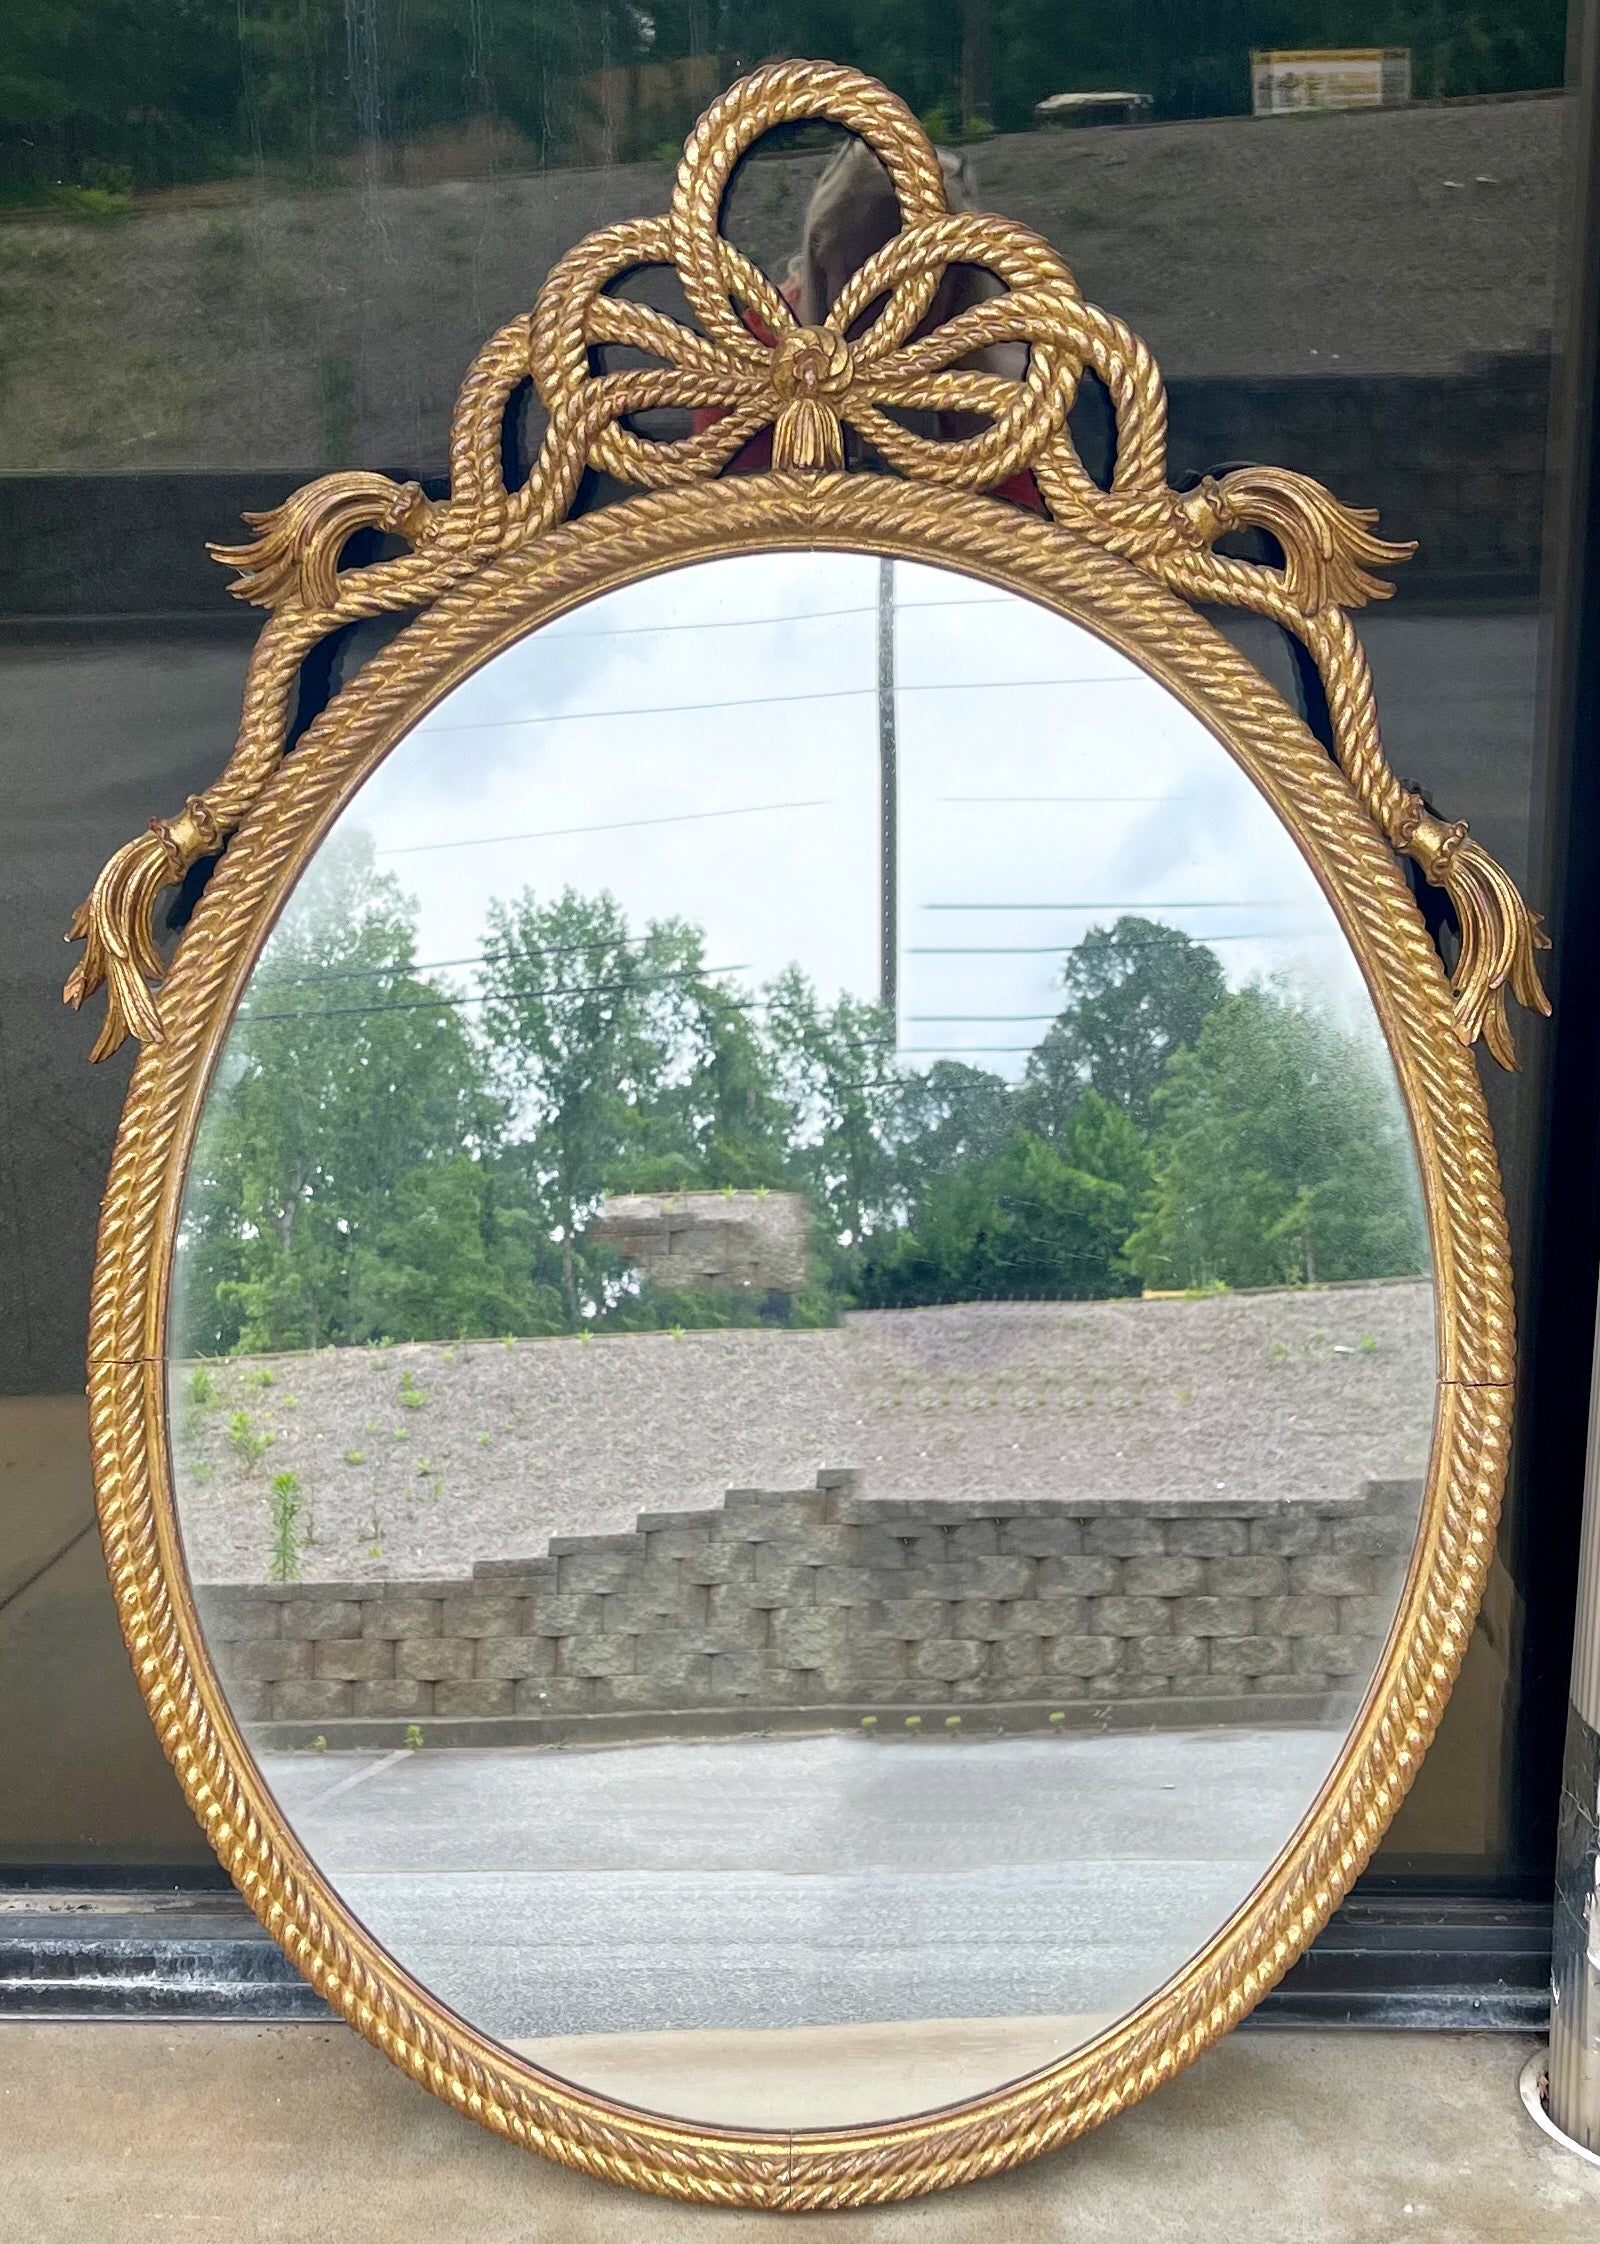 J'adore celui-là. Il s'agit d'un miroir italien en bois doré sculpté avec un motif de glands et de cordes. Il présente un style néo-classique intemporel. Le miroir n'est pas marqué et date très probablement de 1960. 